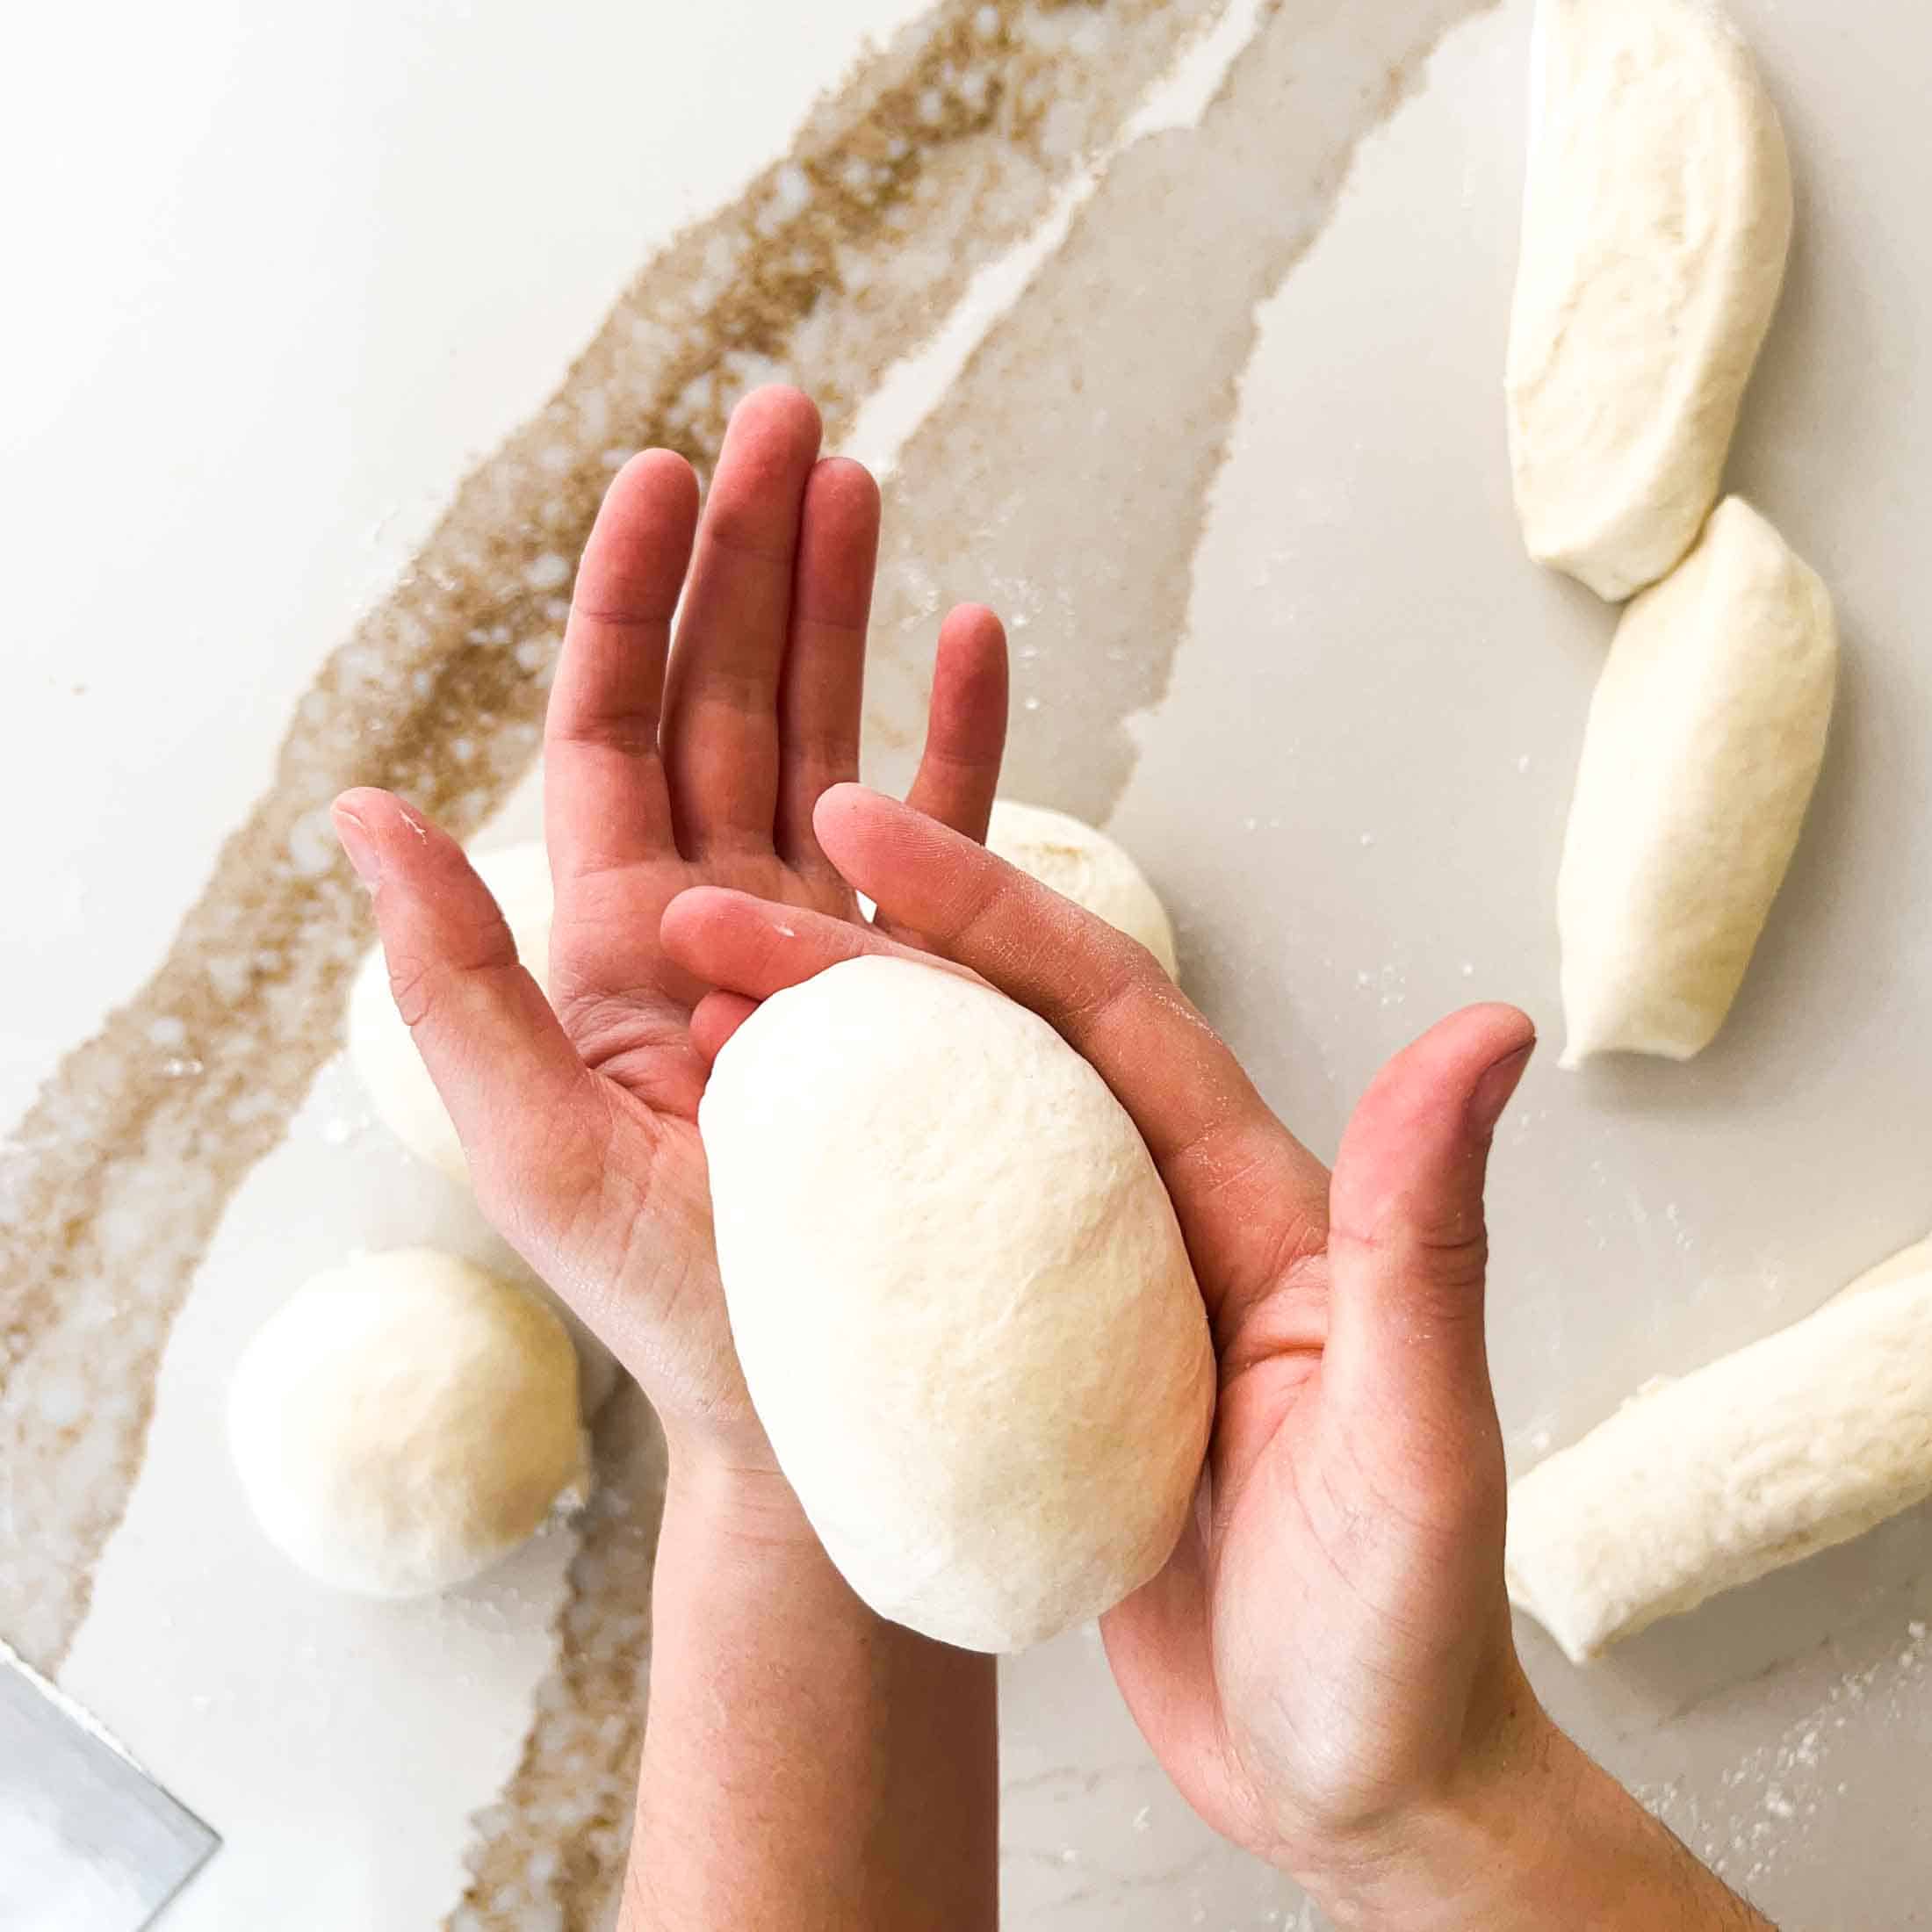 Tightening a ball of dough into a bun shape.